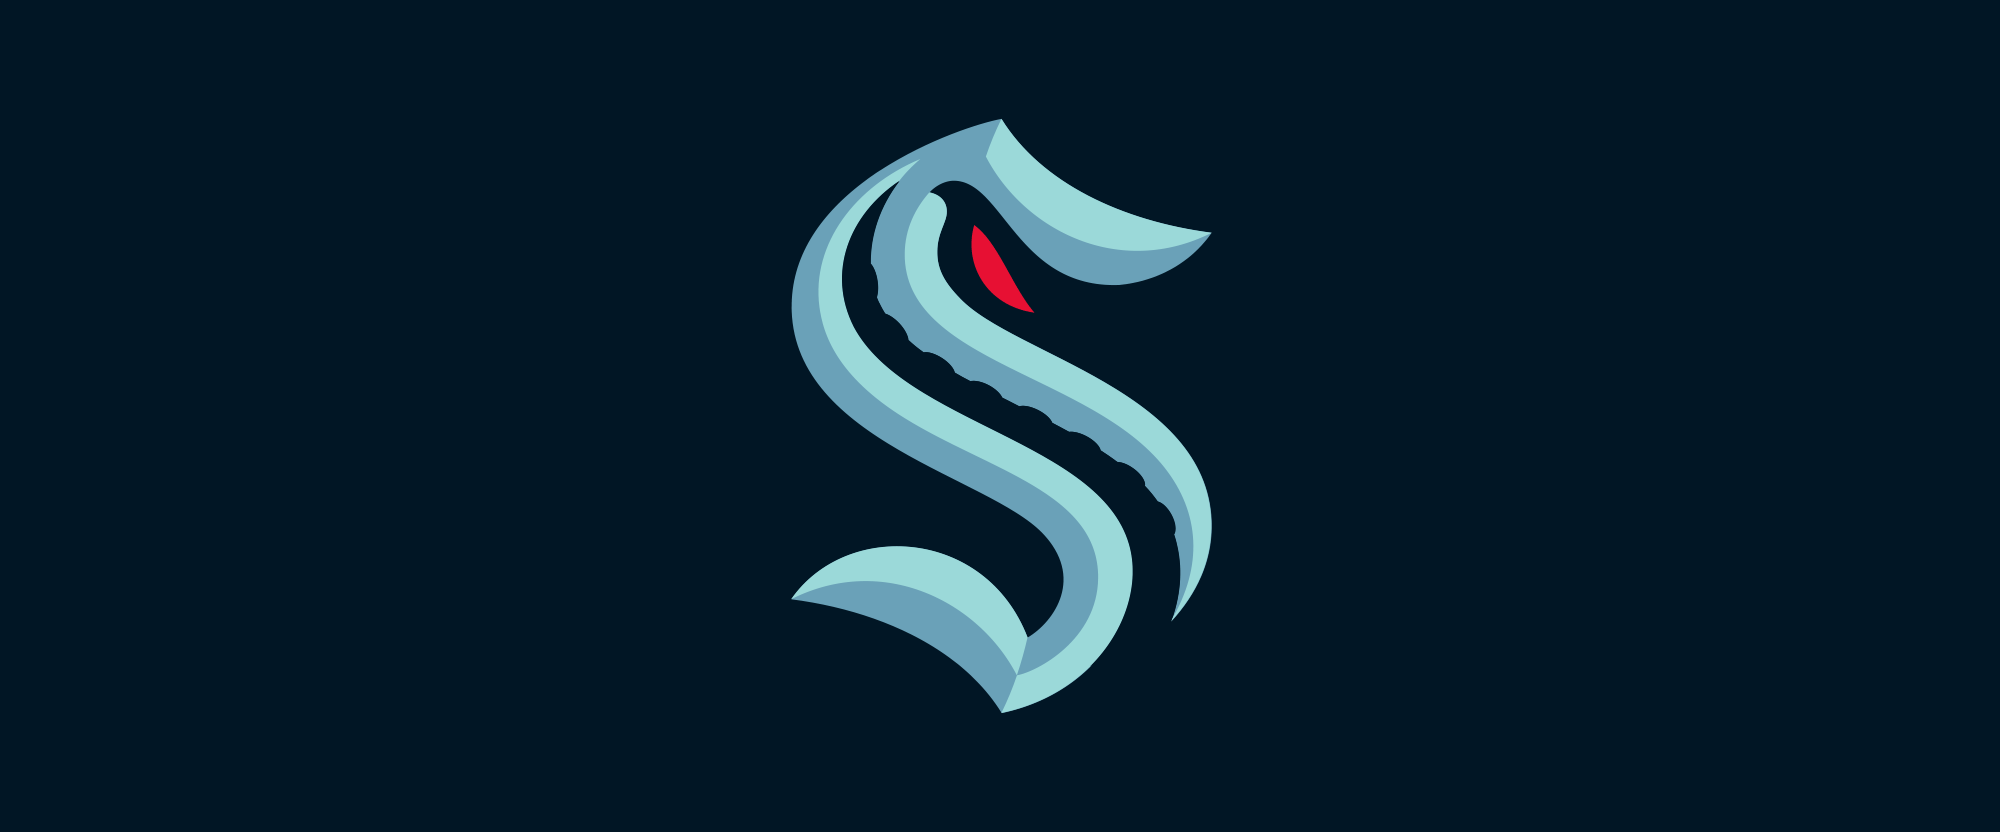 seattle_kraken_logo_new.png